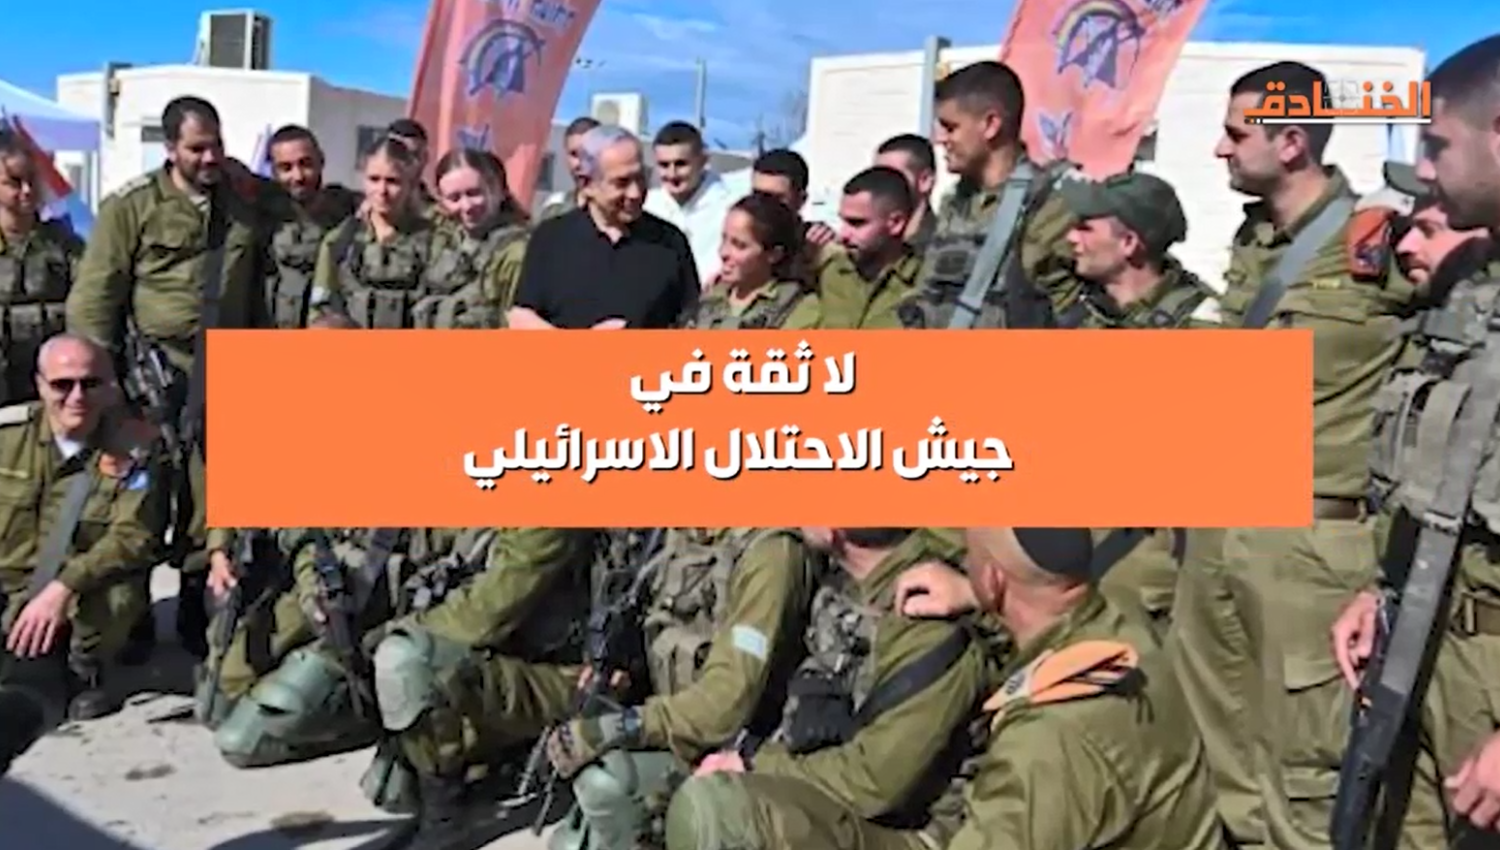 لا ثقة في جيش الاحتلال الاسرائيلي